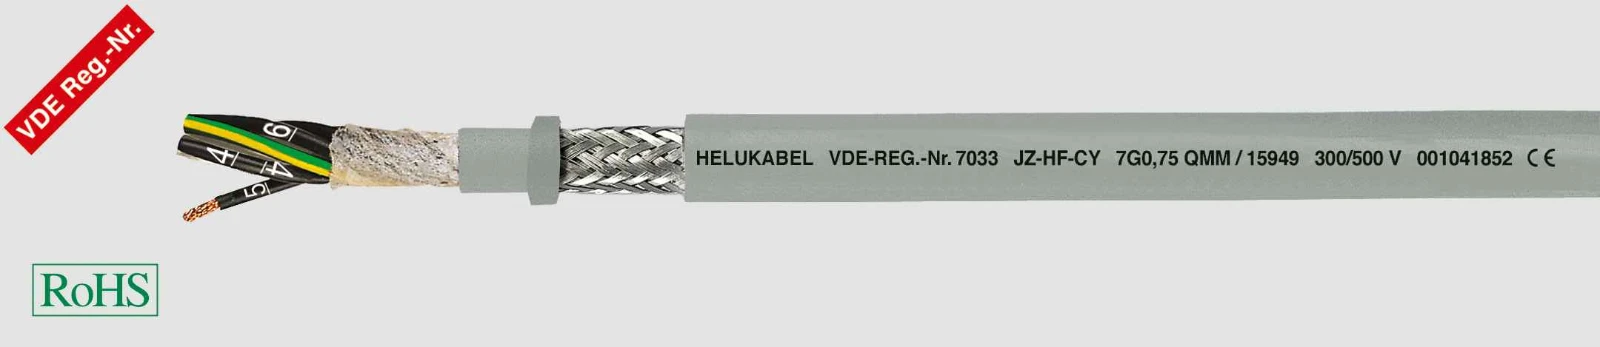 Helukabel Voedingskabel < 1 kV, voor beweegbare toepassingen JZ-HF-CY